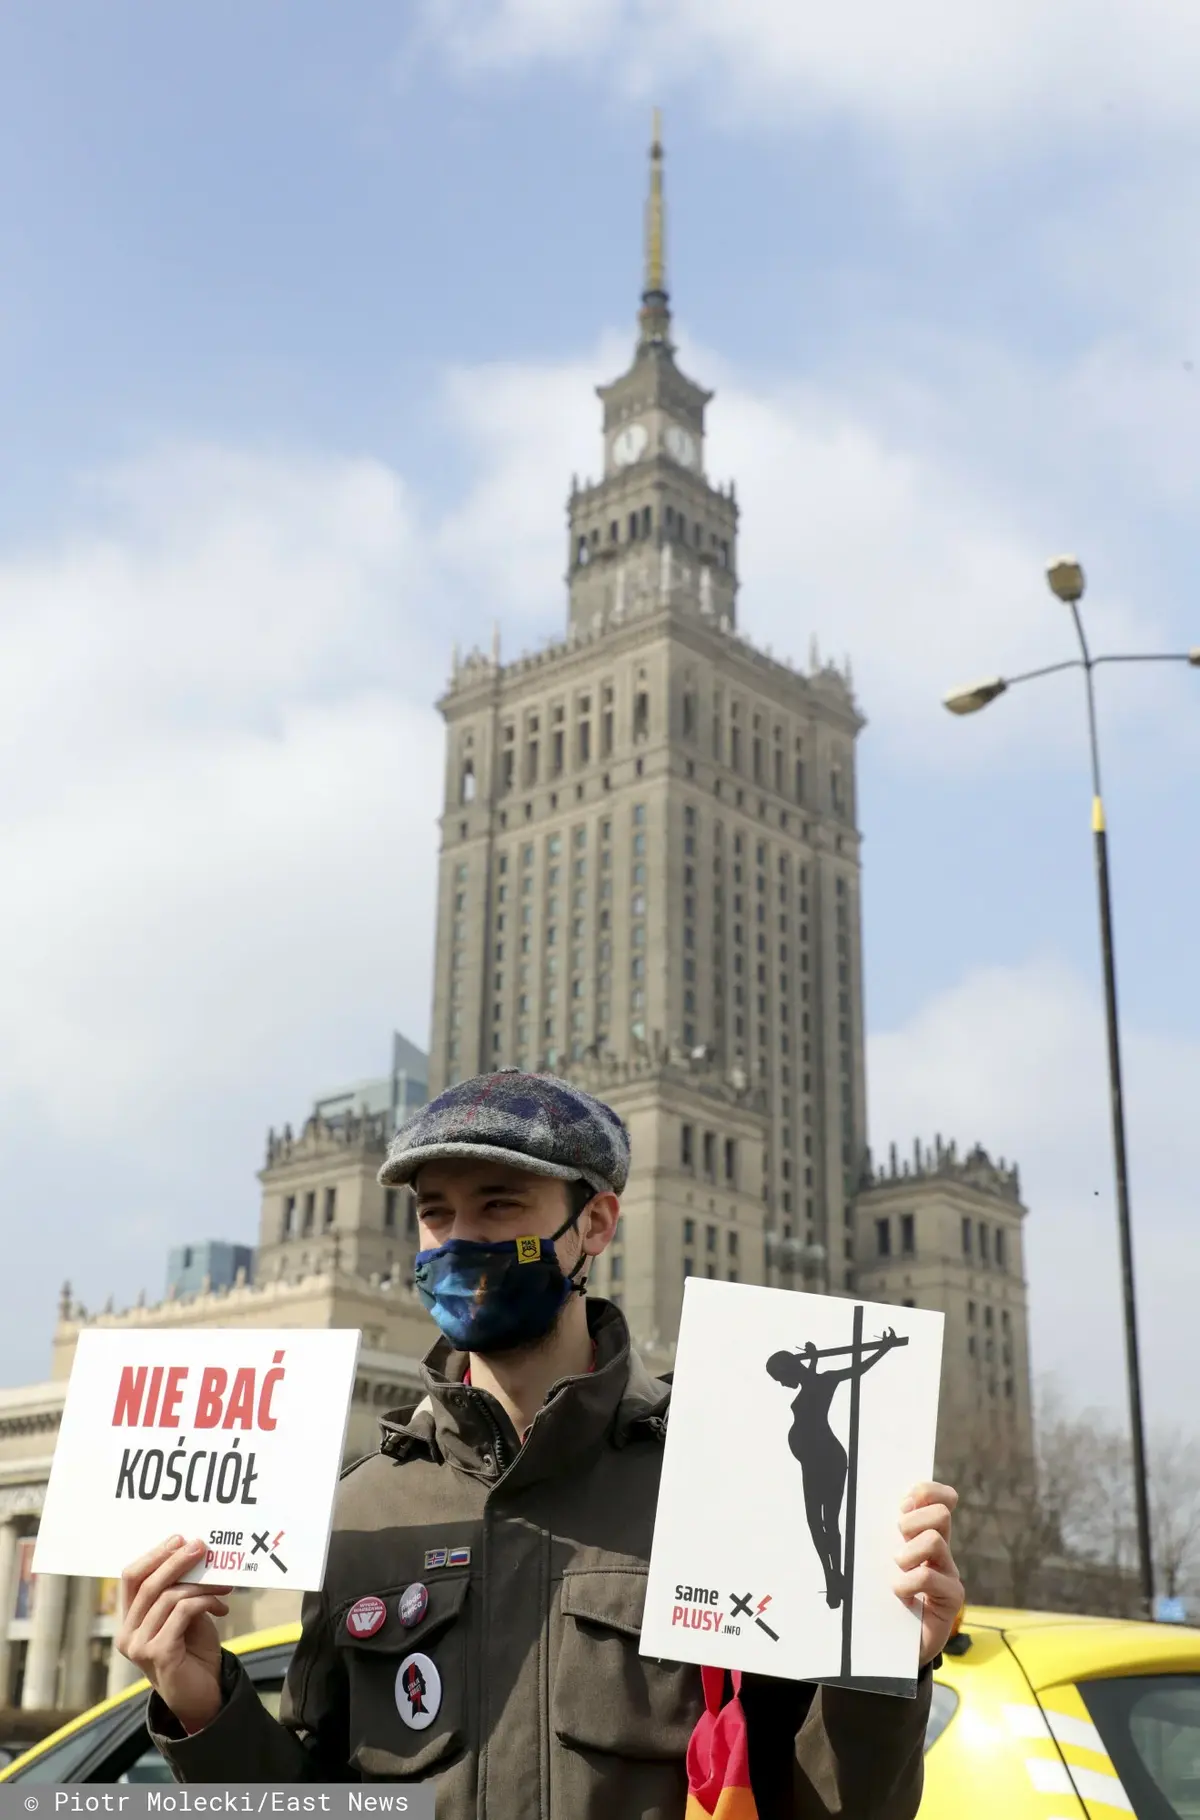 Mężczyzna strajkuje, w dłoni trzyma plakat z napisem "nie bać kościół", w tle Pałac Kultury